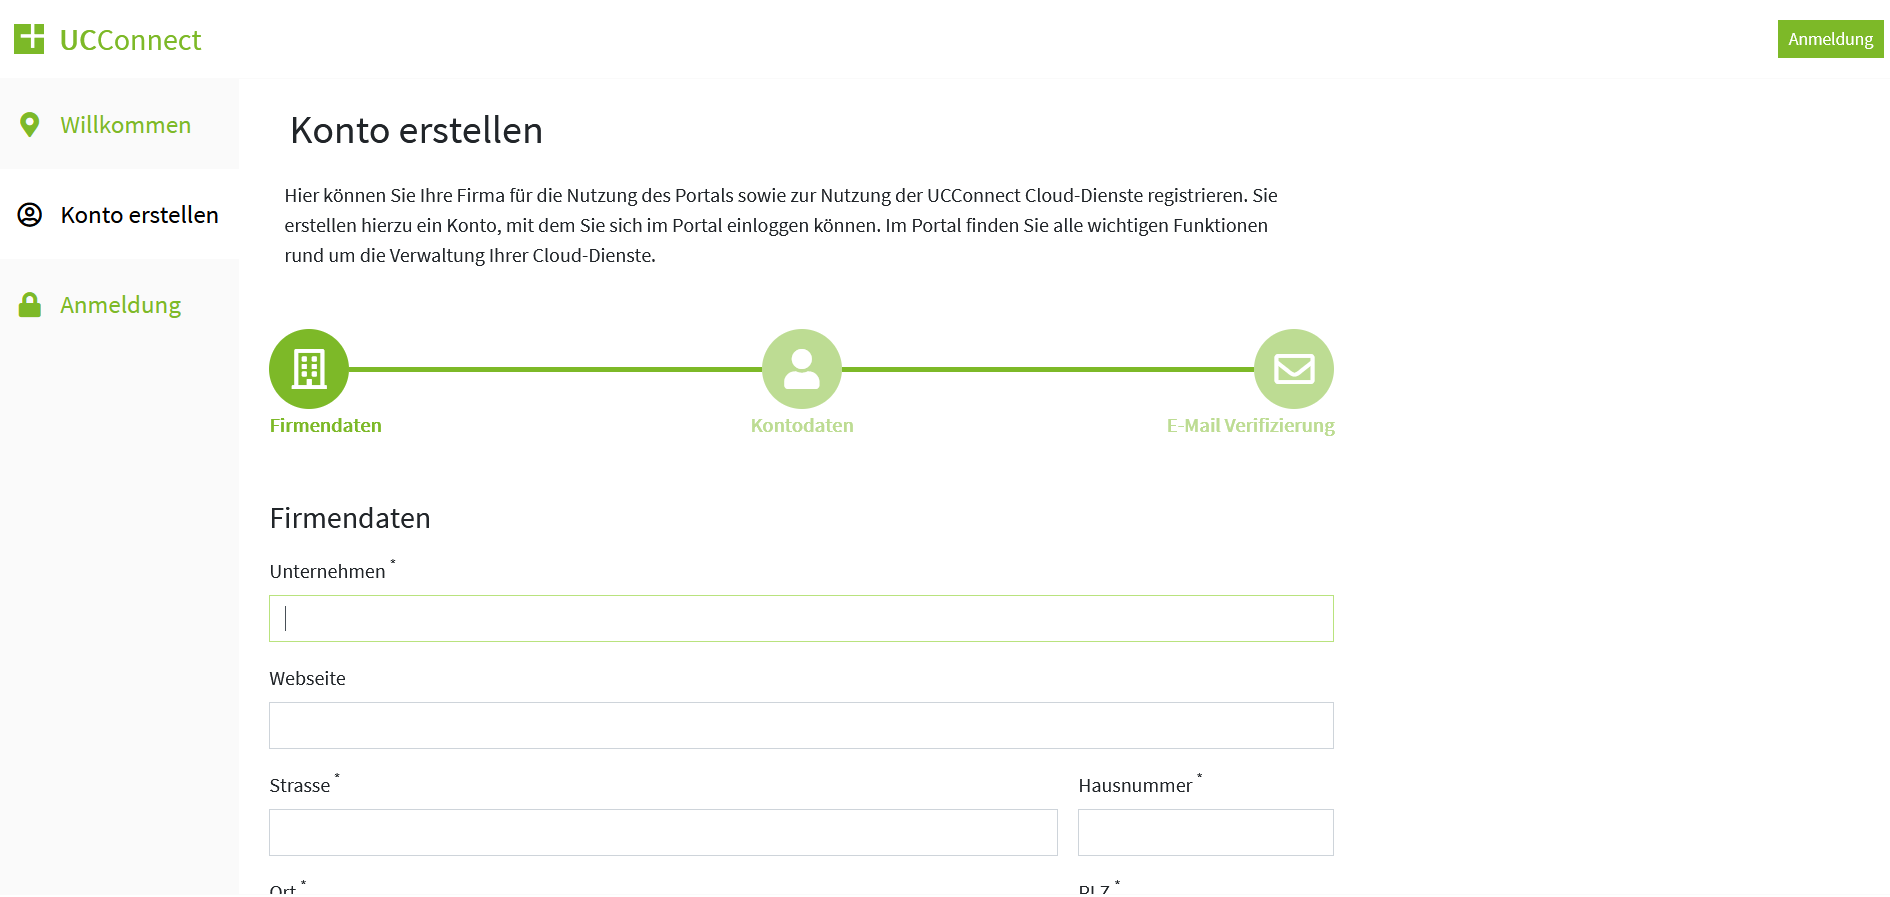 Beispiel Screenshot estos UCConnect Portal - Konto erstellen und Firmendaten eingeben